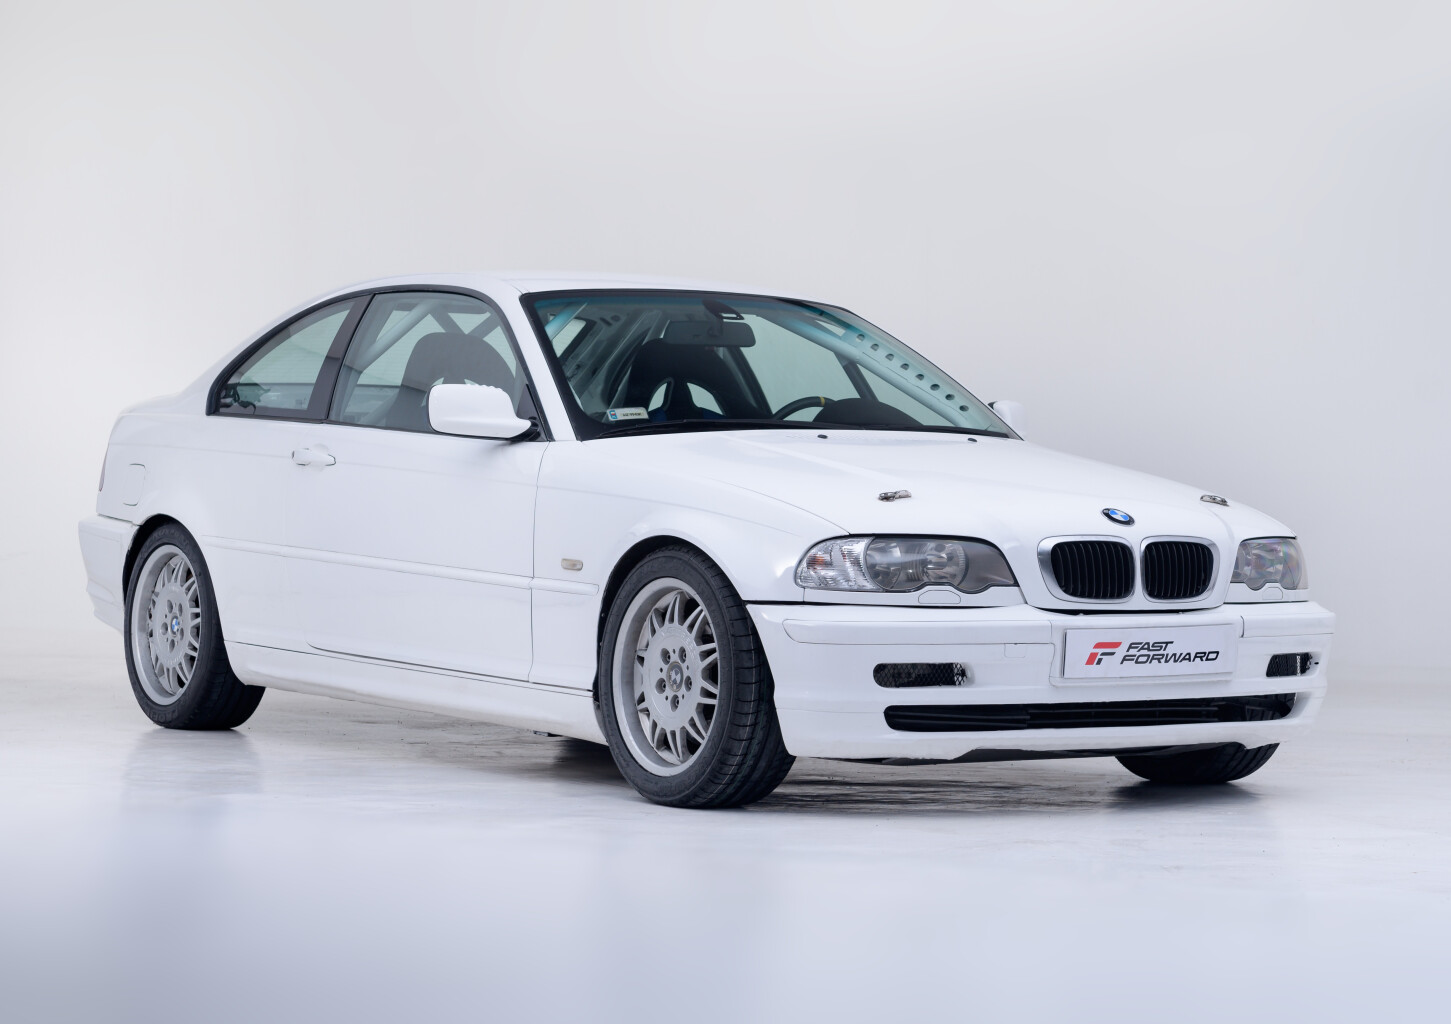 Jazda BMW E46 (4 okrążenia) | Wiele Lokalizacji